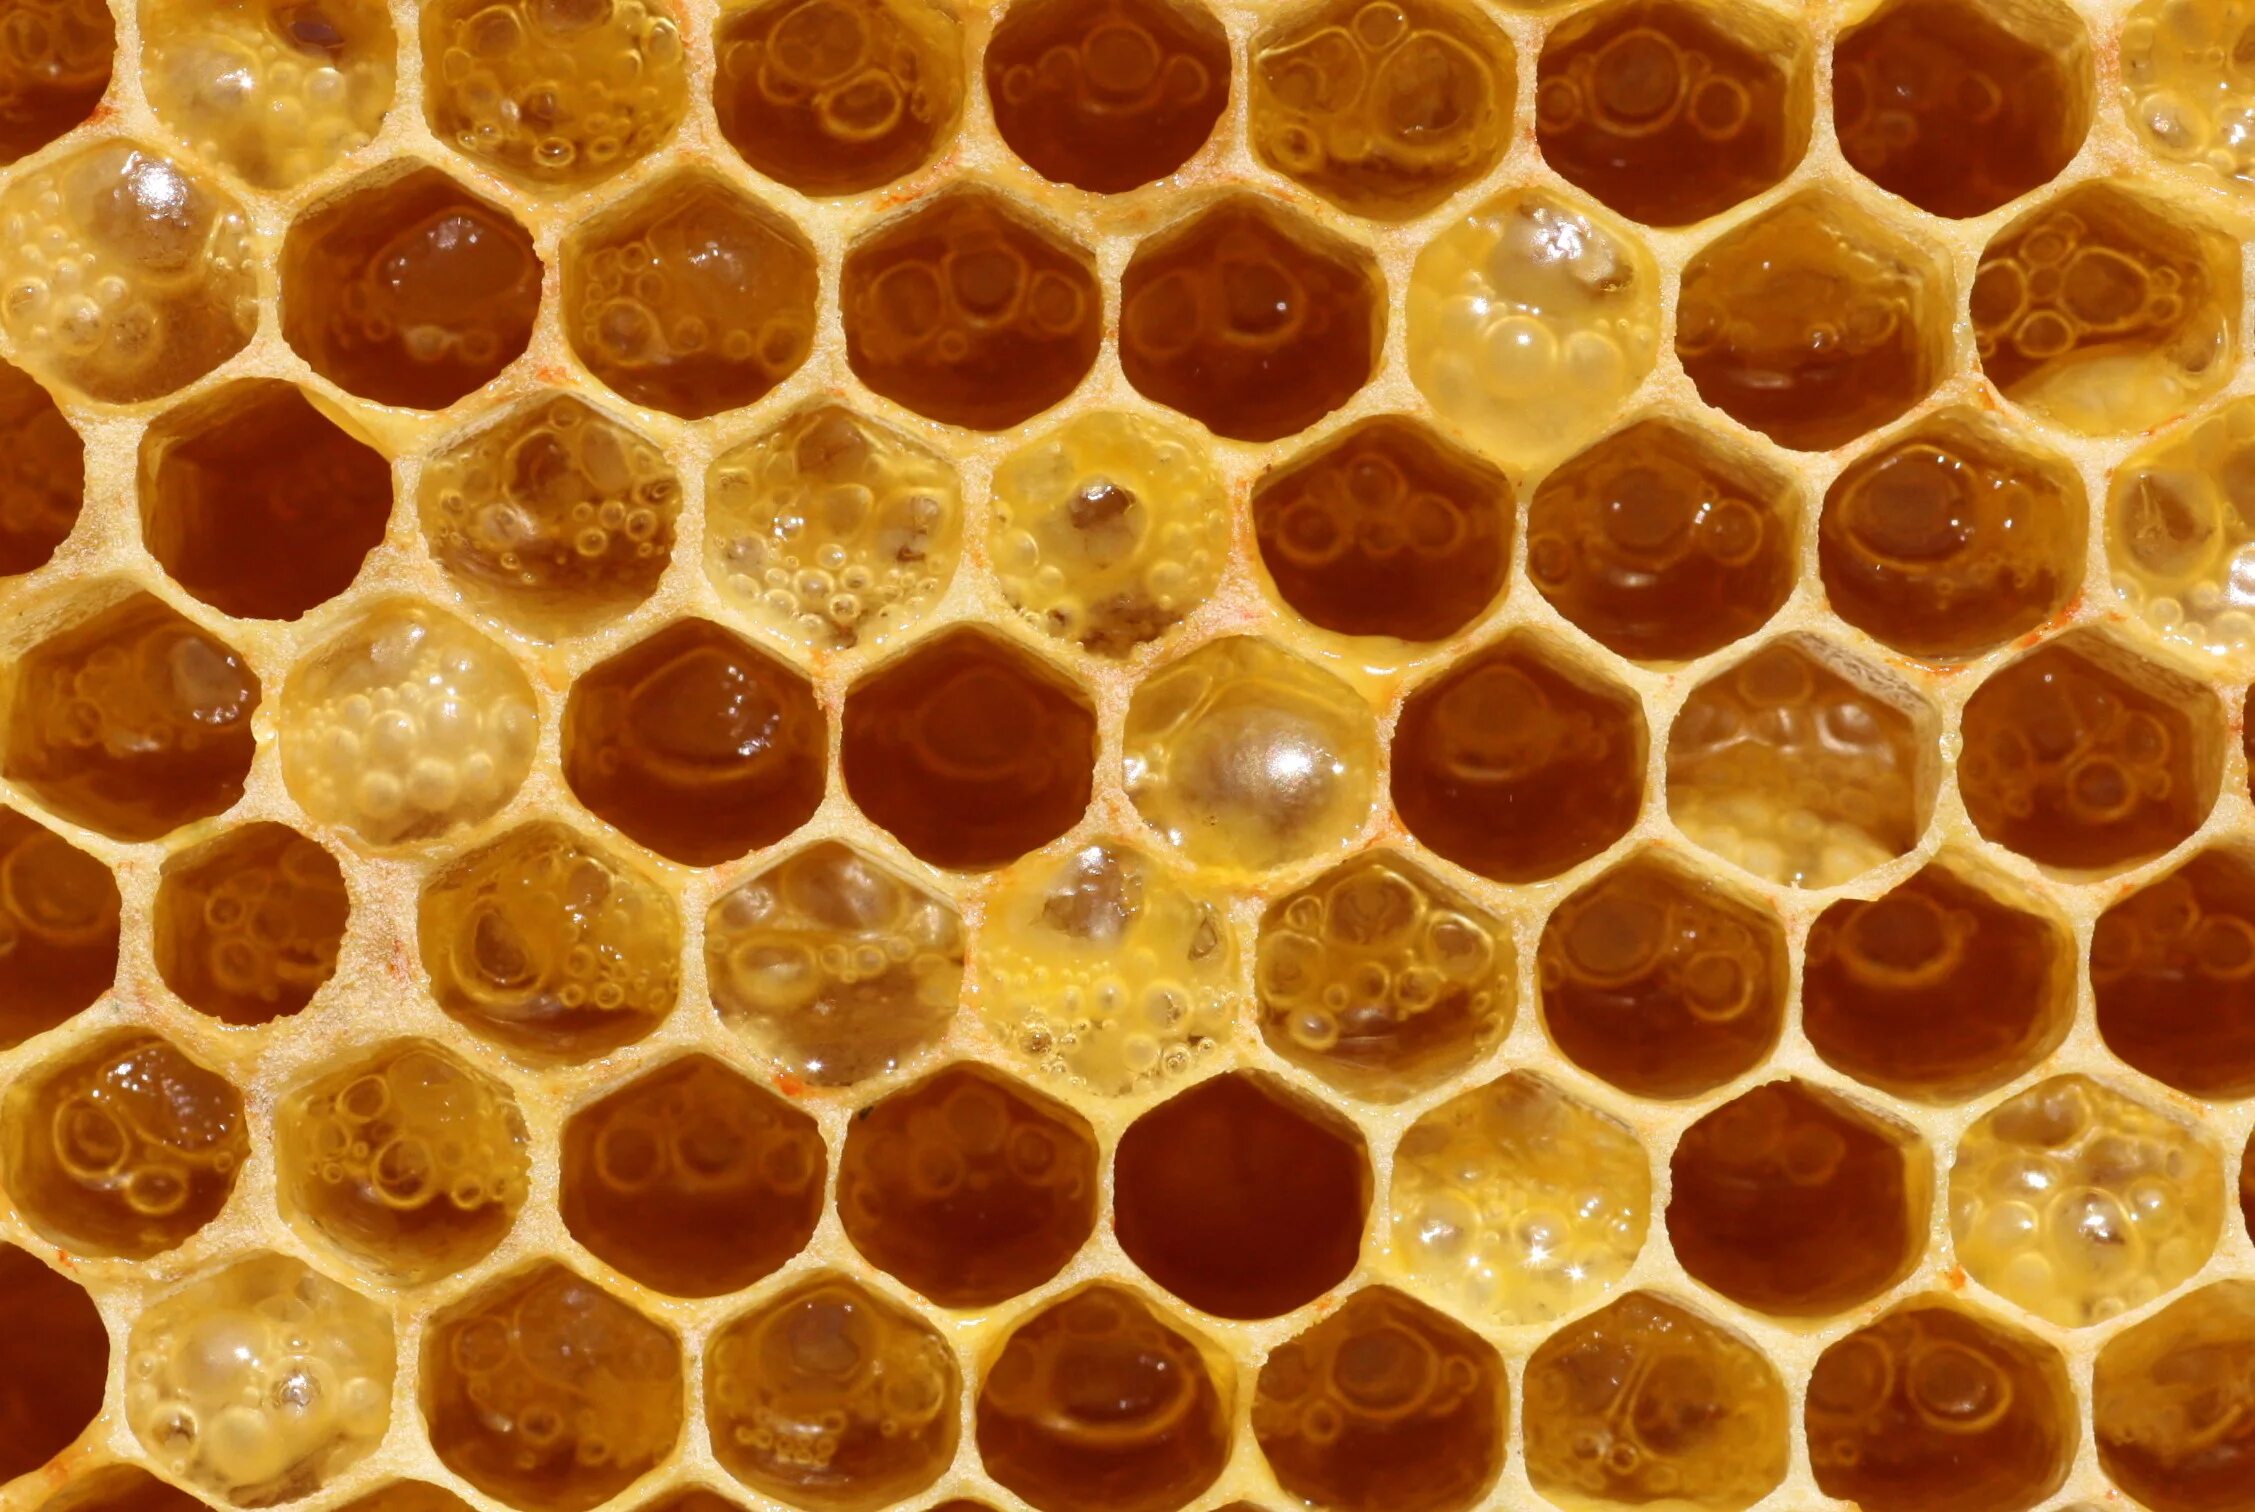 Big honey. Забрус пчелиный. Пчелиное маточное молочко (Королевское желе). Соты пчелиные. Медовые соты.